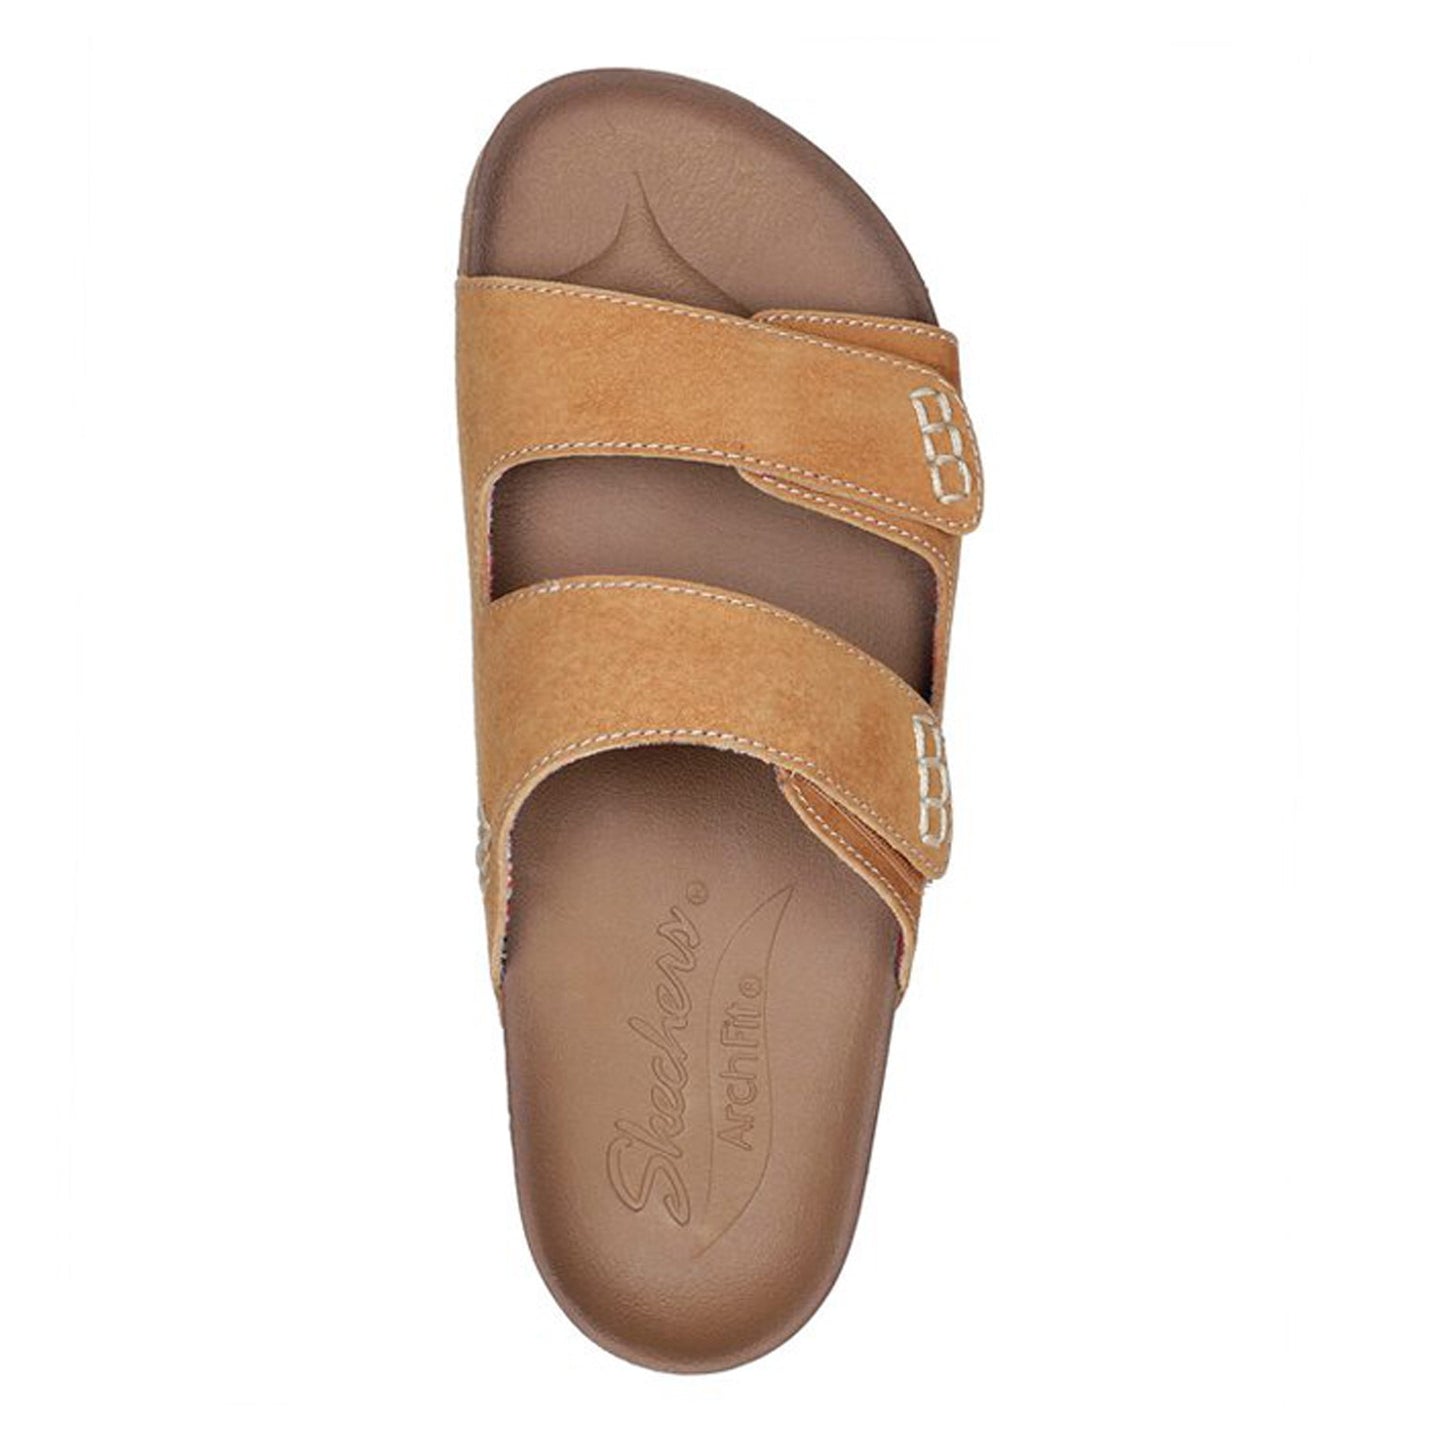 Peltz Shoes  Women's Skechers Arch Fit Granola - Desert Posy Sandal Tan 163319-TAN